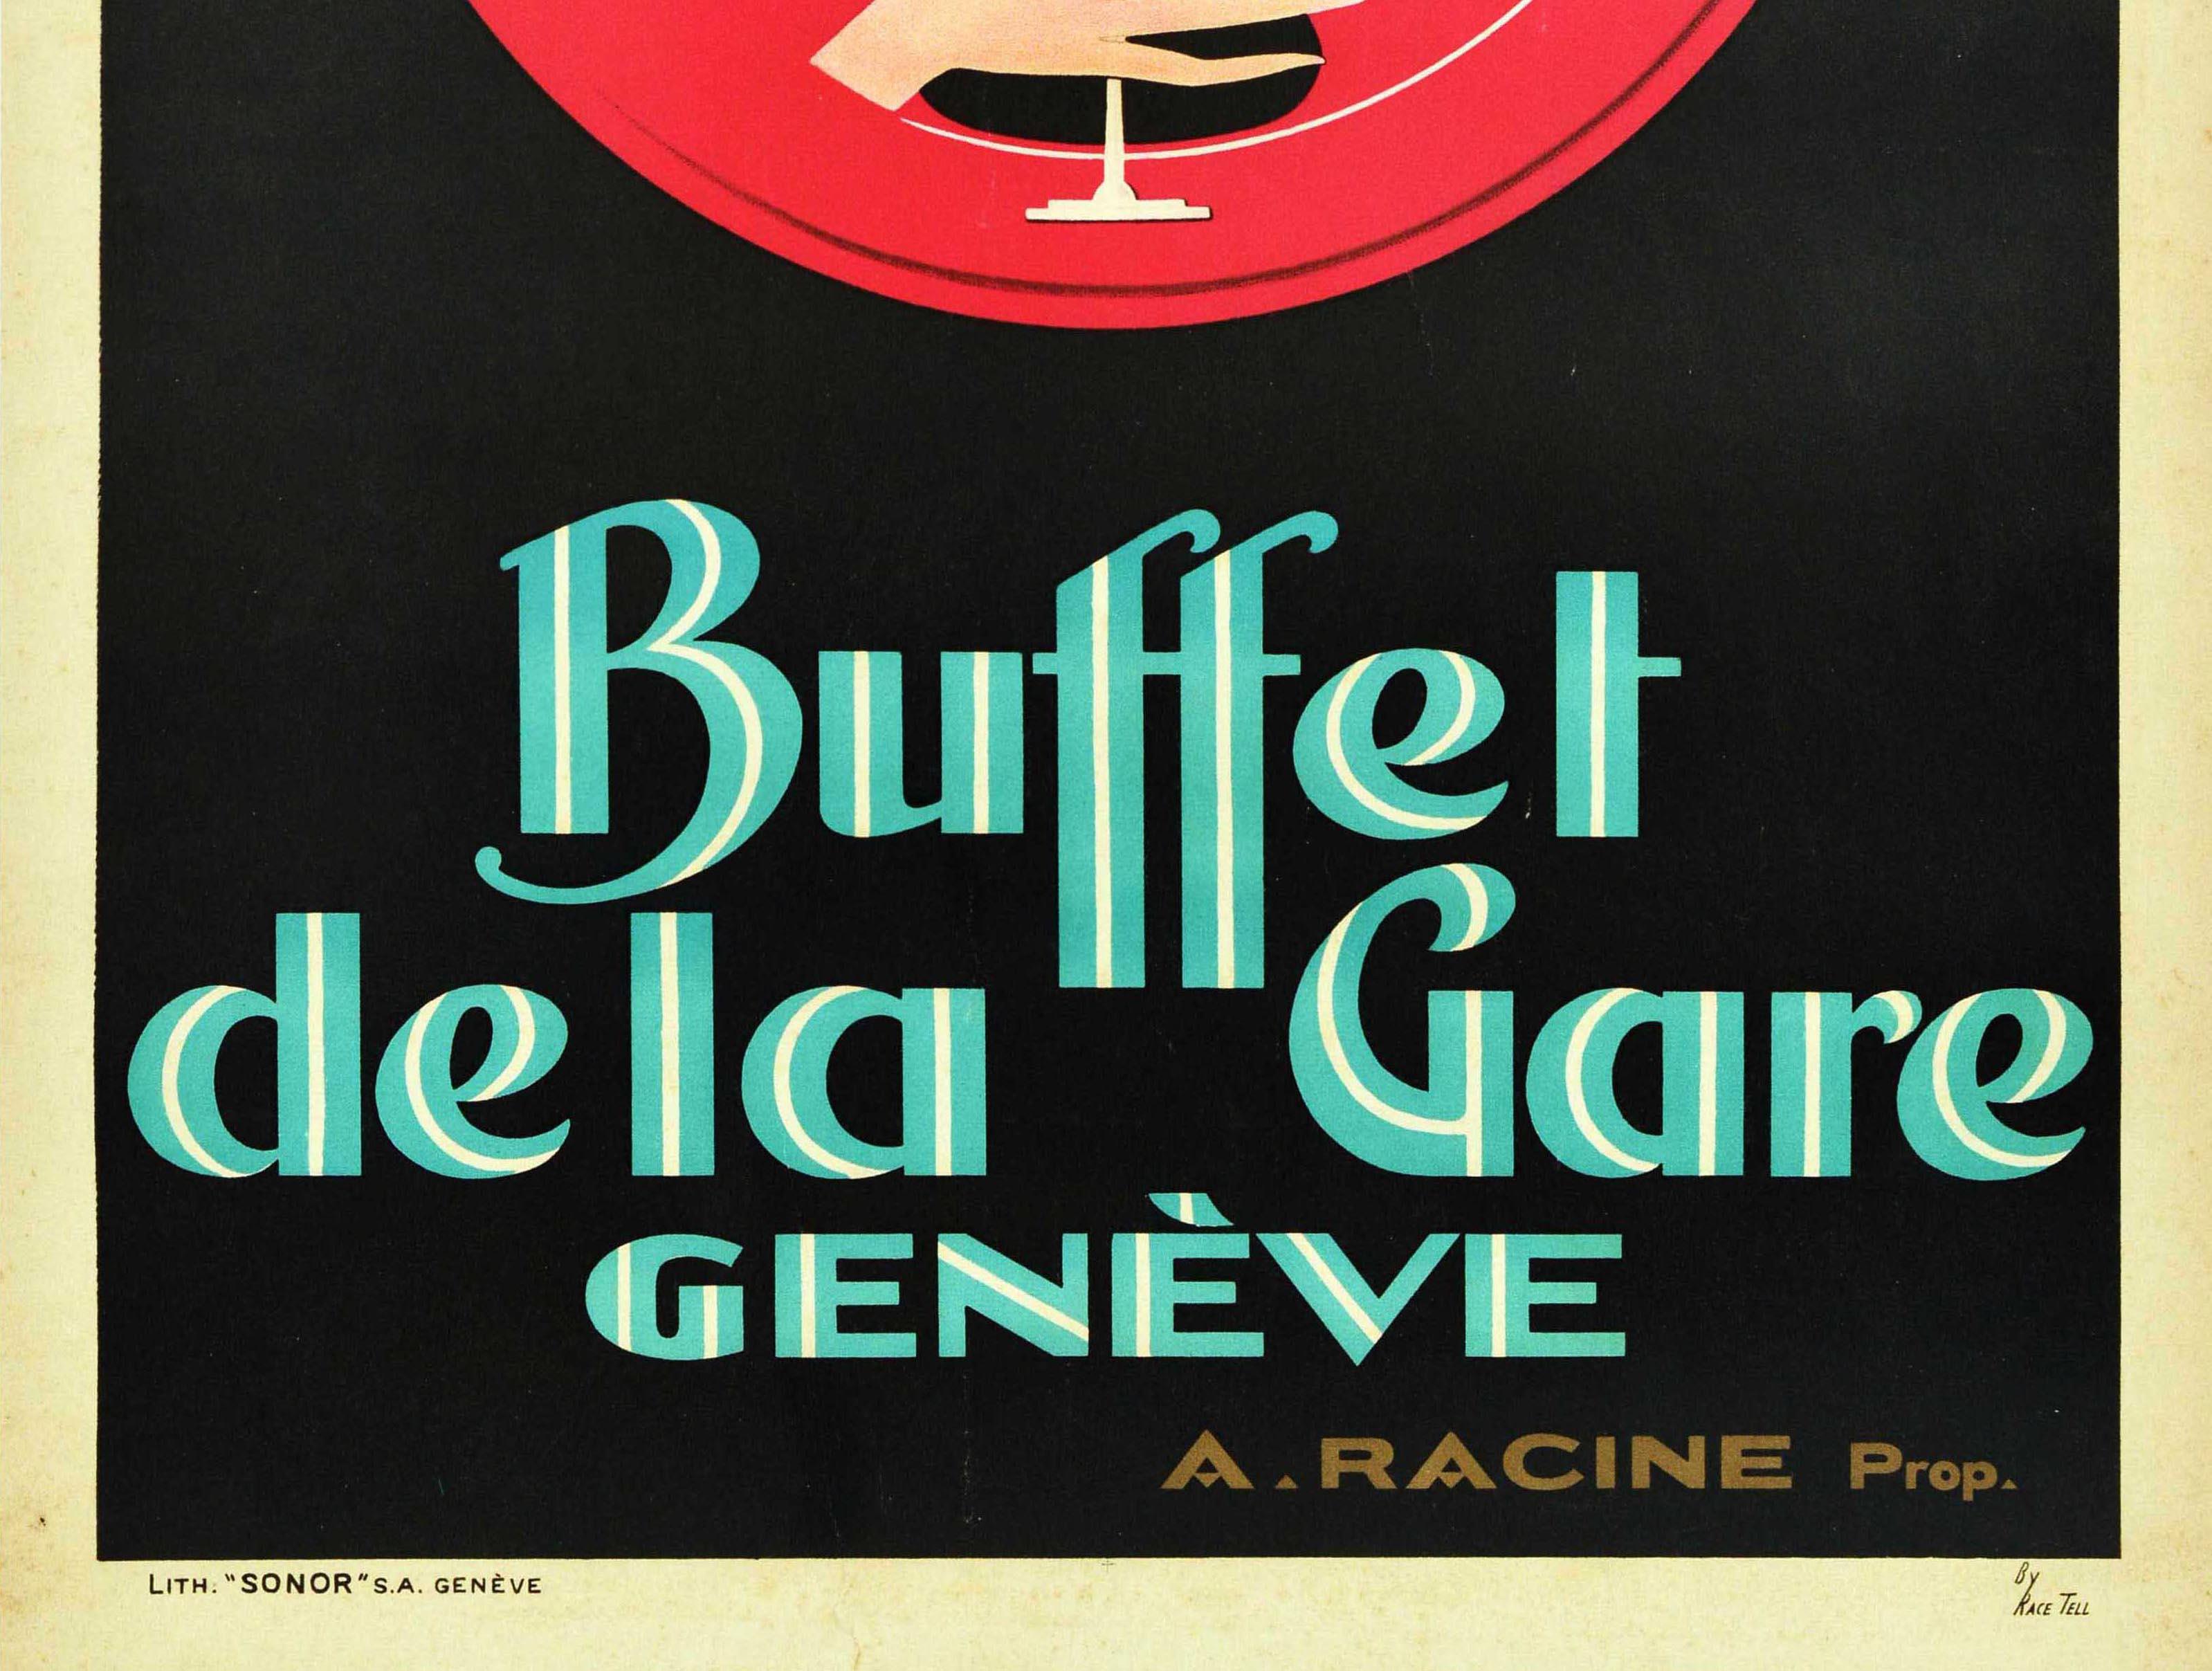 Originales, antikes Werbeplakat für das Buffet De La Gare Geneve / Station Buffet Geneva mit einem atemberaubenden Art-Déco-Bild einer zum Betrachter blickenden Dame, die ein Glas zum Trinken hält, vor einem roten Rad auf schwarzem Hintergrund,